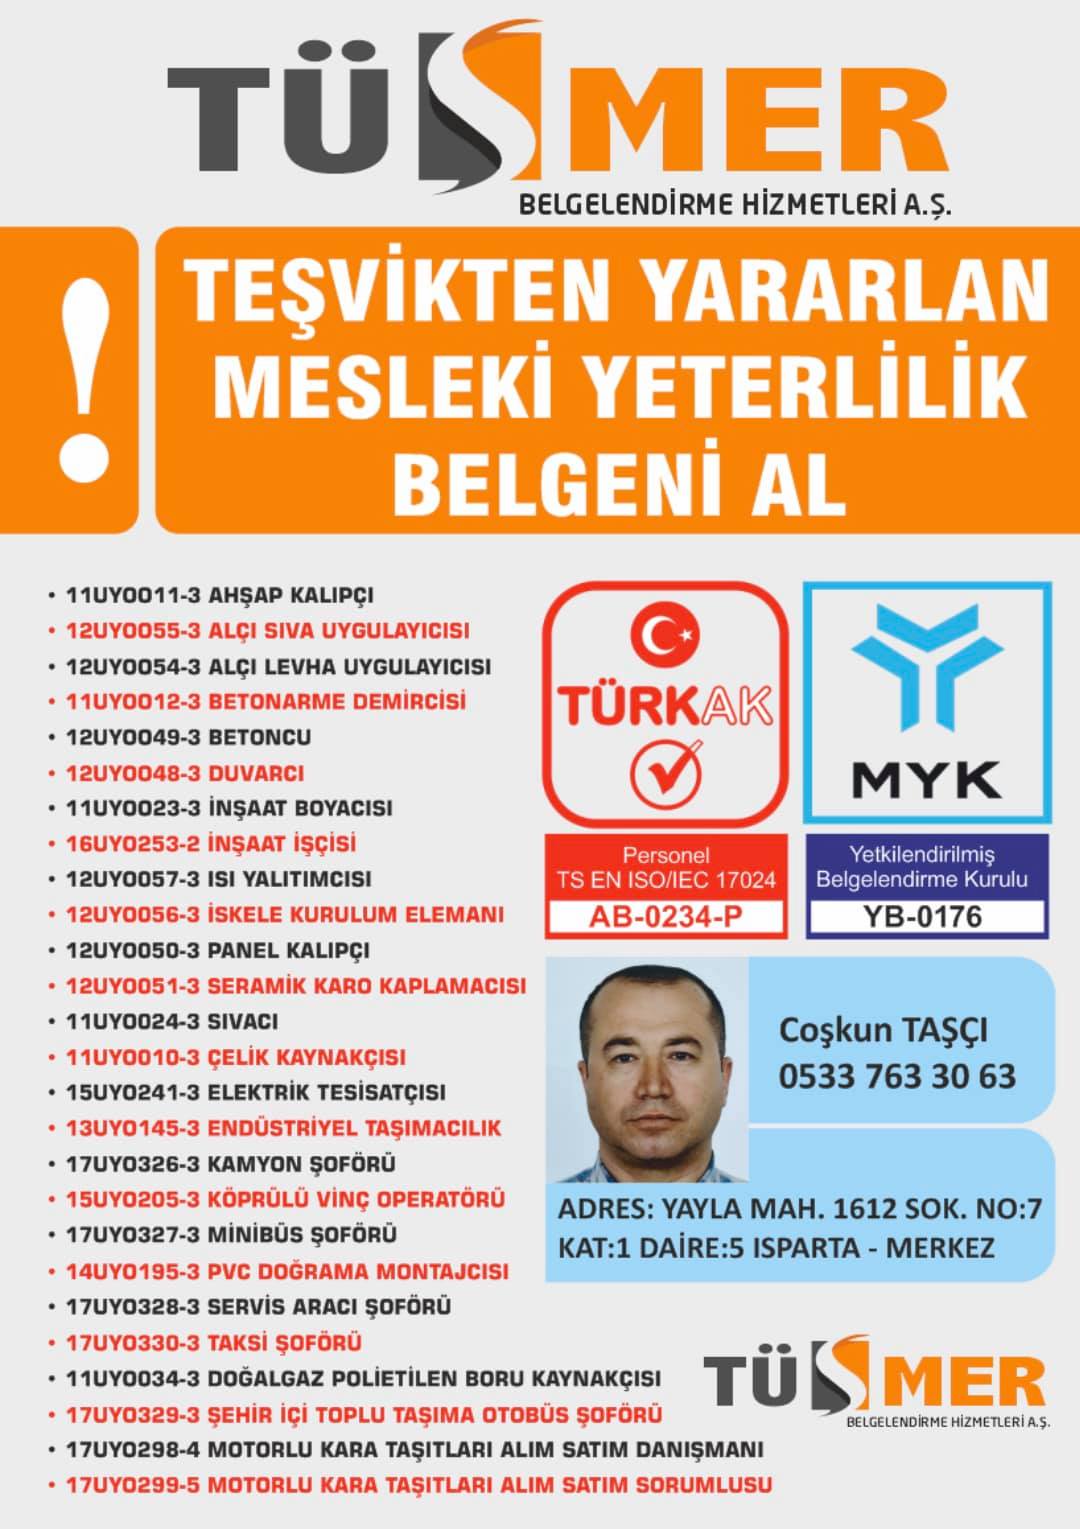 MYK MESLEKİ YETERLİLİK BELGESİ Karlıktepe Kartal İstanbul